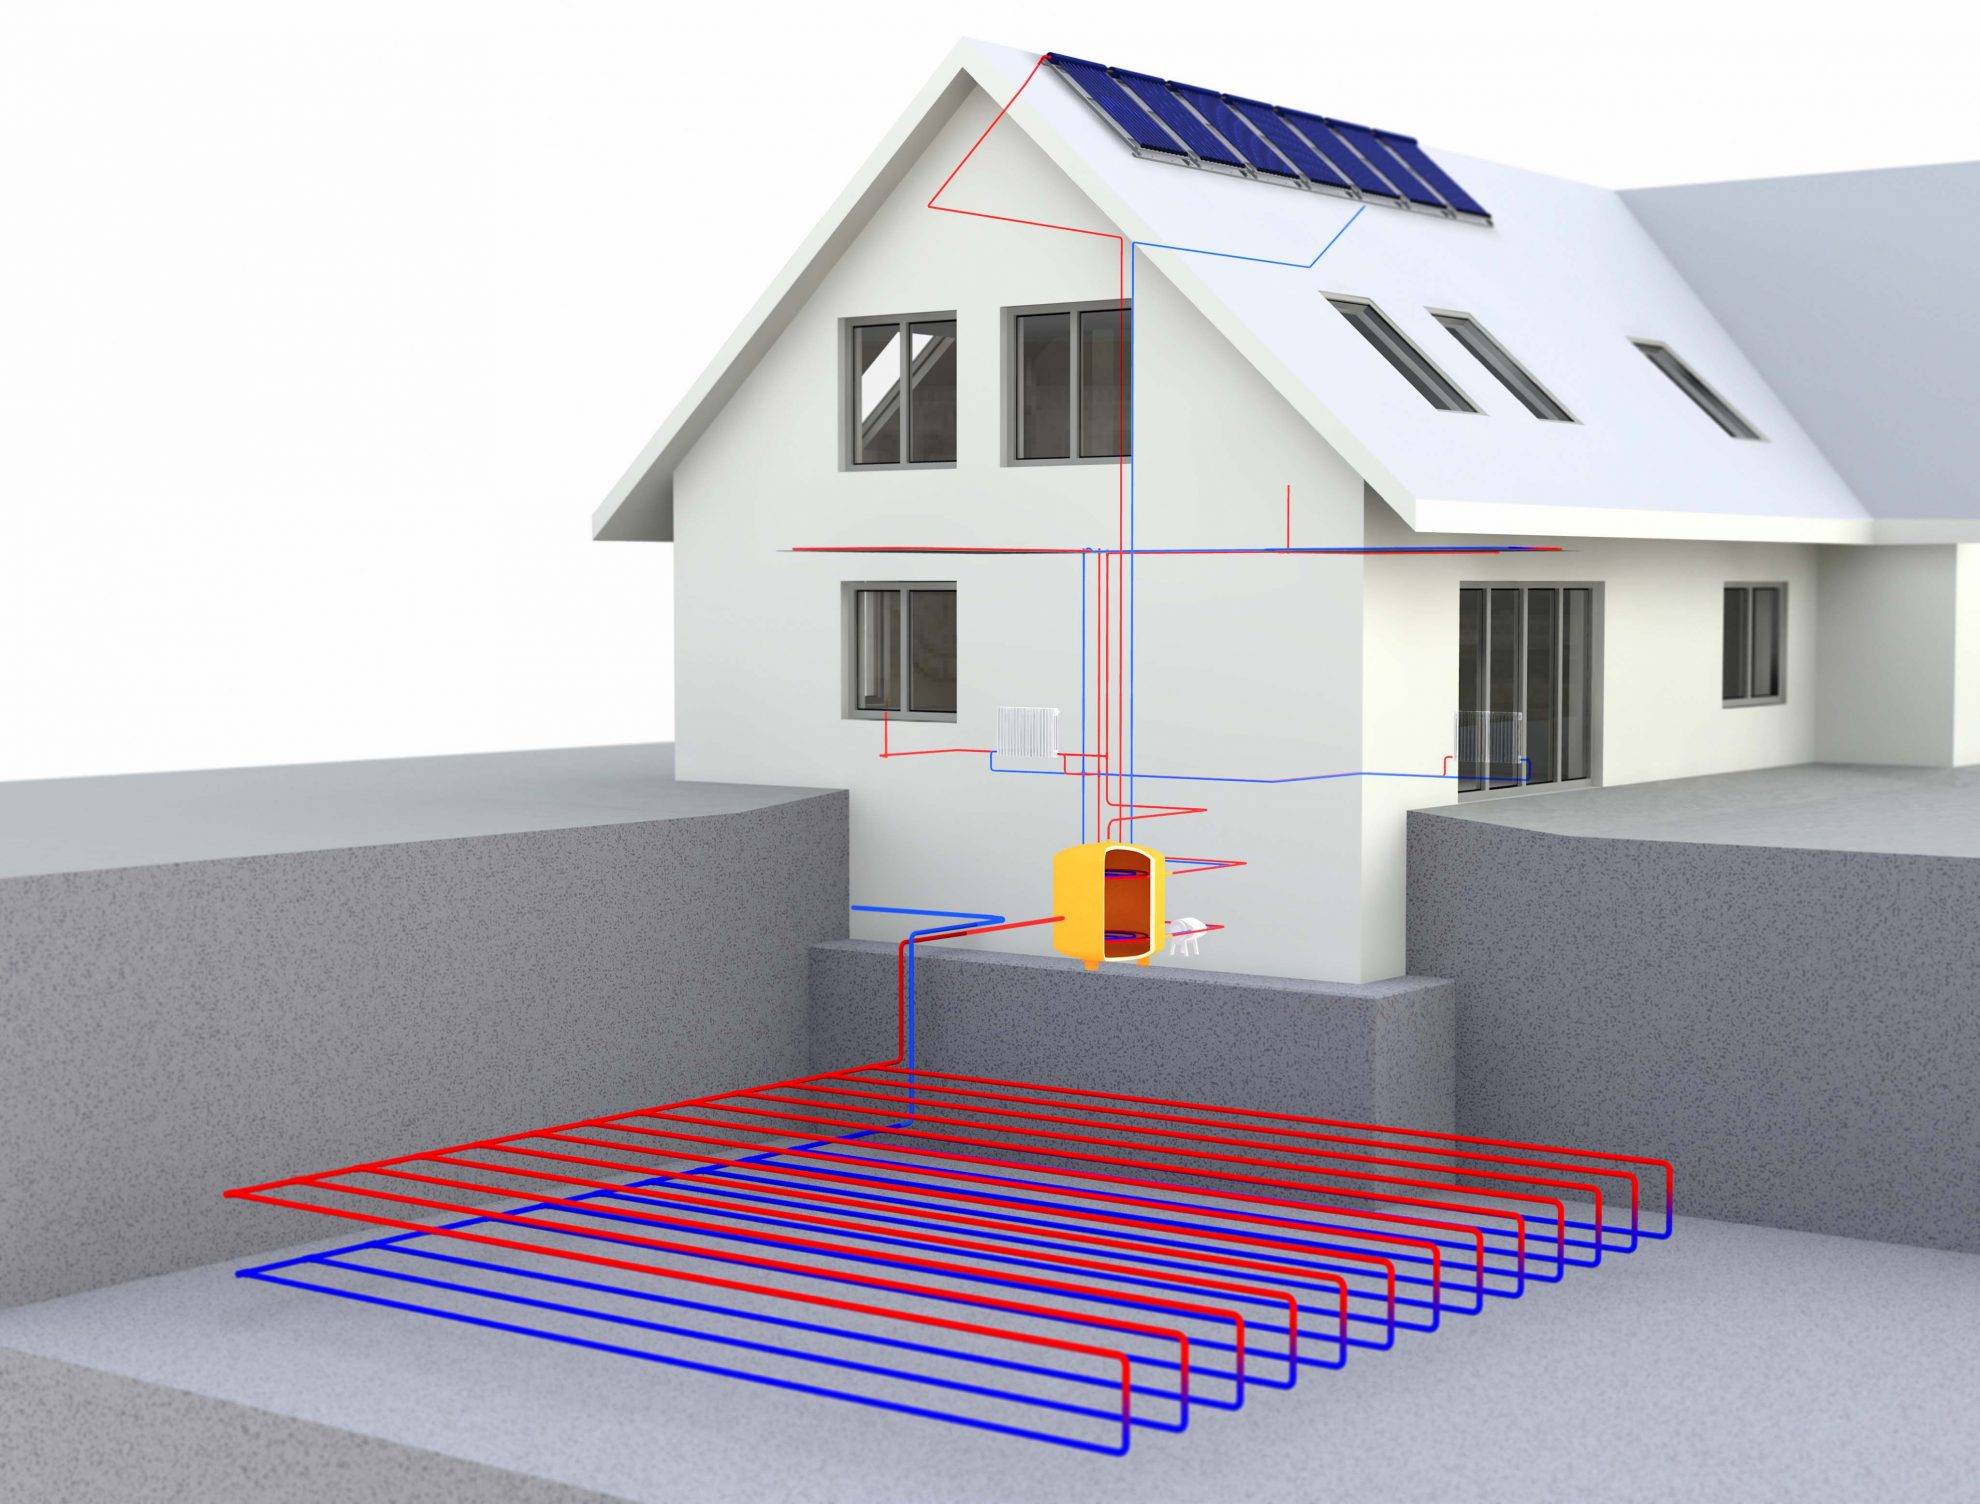 Способы отопления частного дома. обзор наилучших энергосберегающих систем отопления для частного дома. отопление керамическими панелями